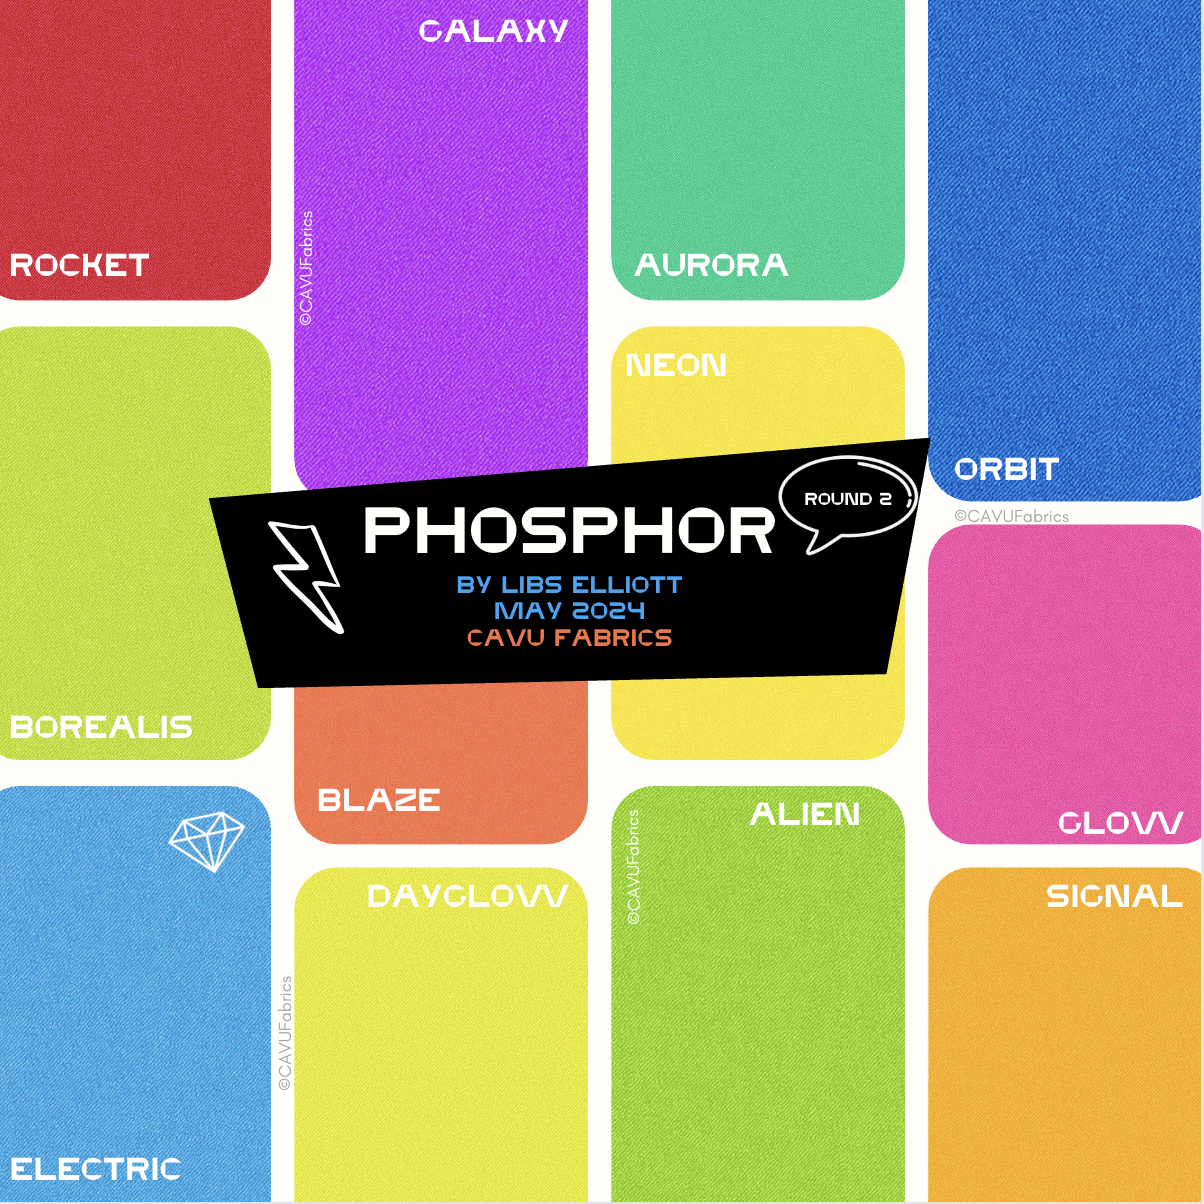 Alien - Phosphor by Libs Elliott